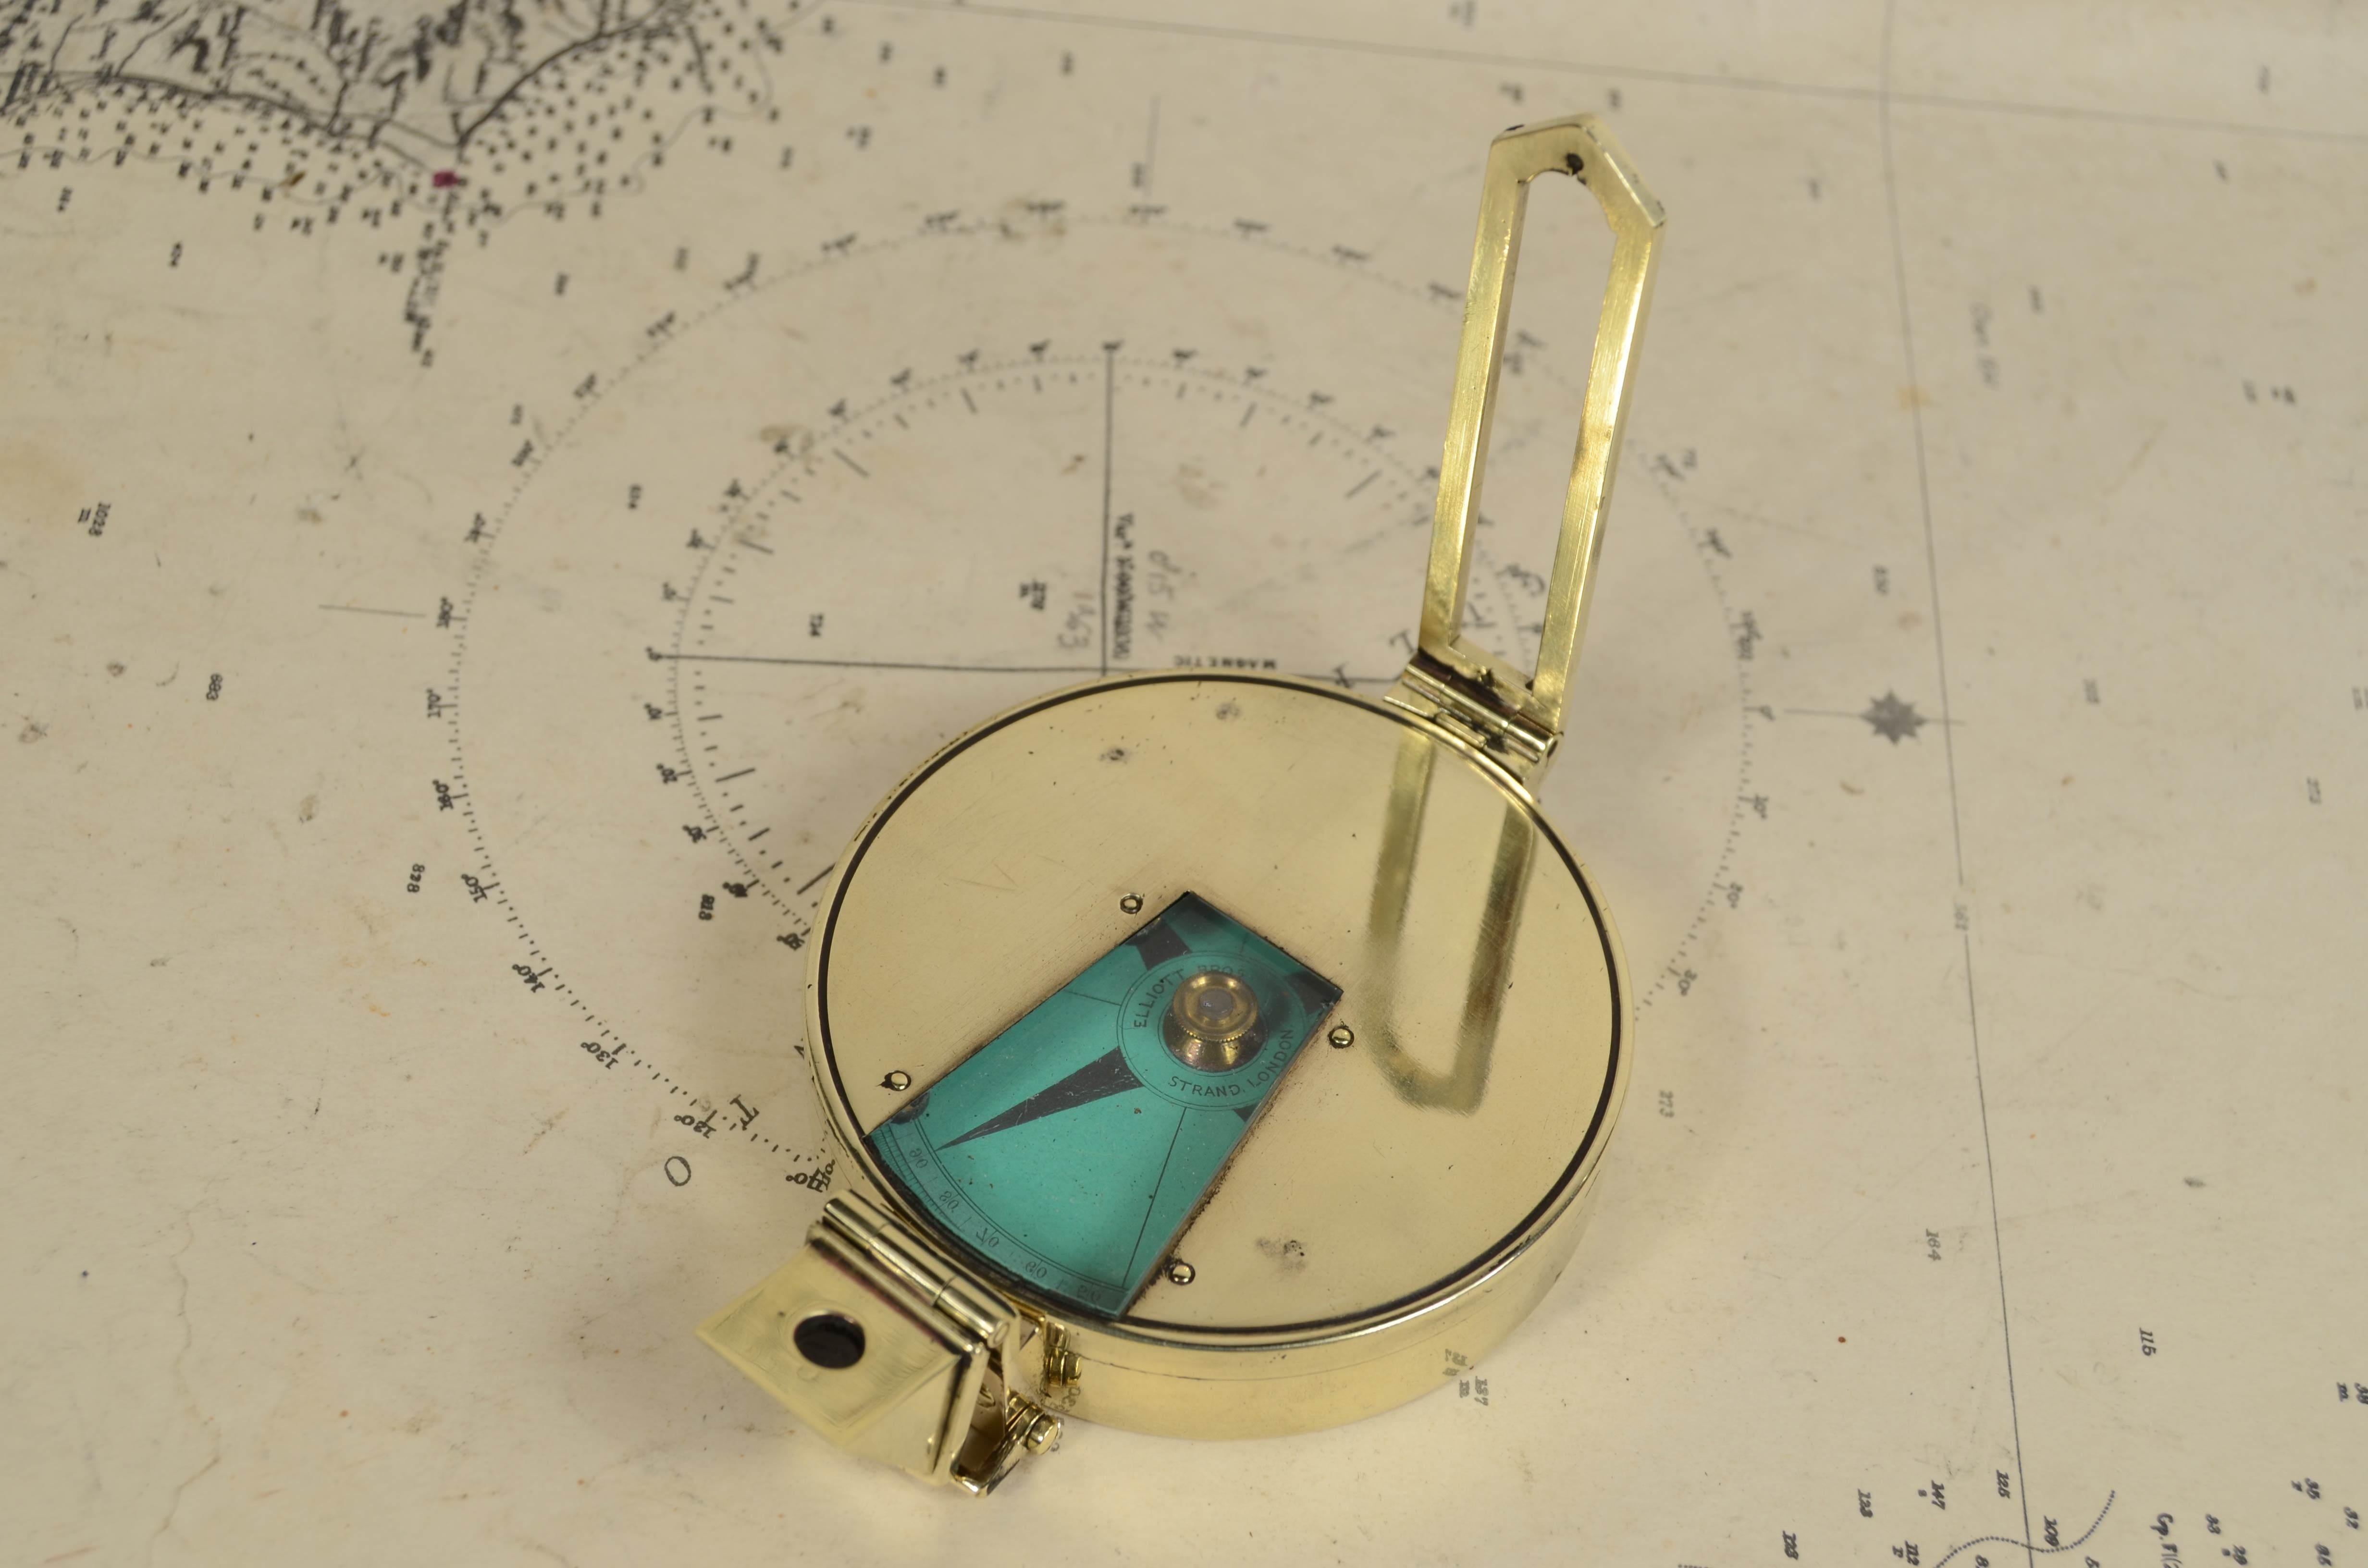 Seltene späten 19. Jahrhundert Messing magnetischen nautischen Vermessung Kompass unterzeichnet Elliott Bros London komplett mit Leder-Etui. Es handelt sich um einen kleinen Kompass mit einem Durchmesser von 7 cm, der typischerweise beim